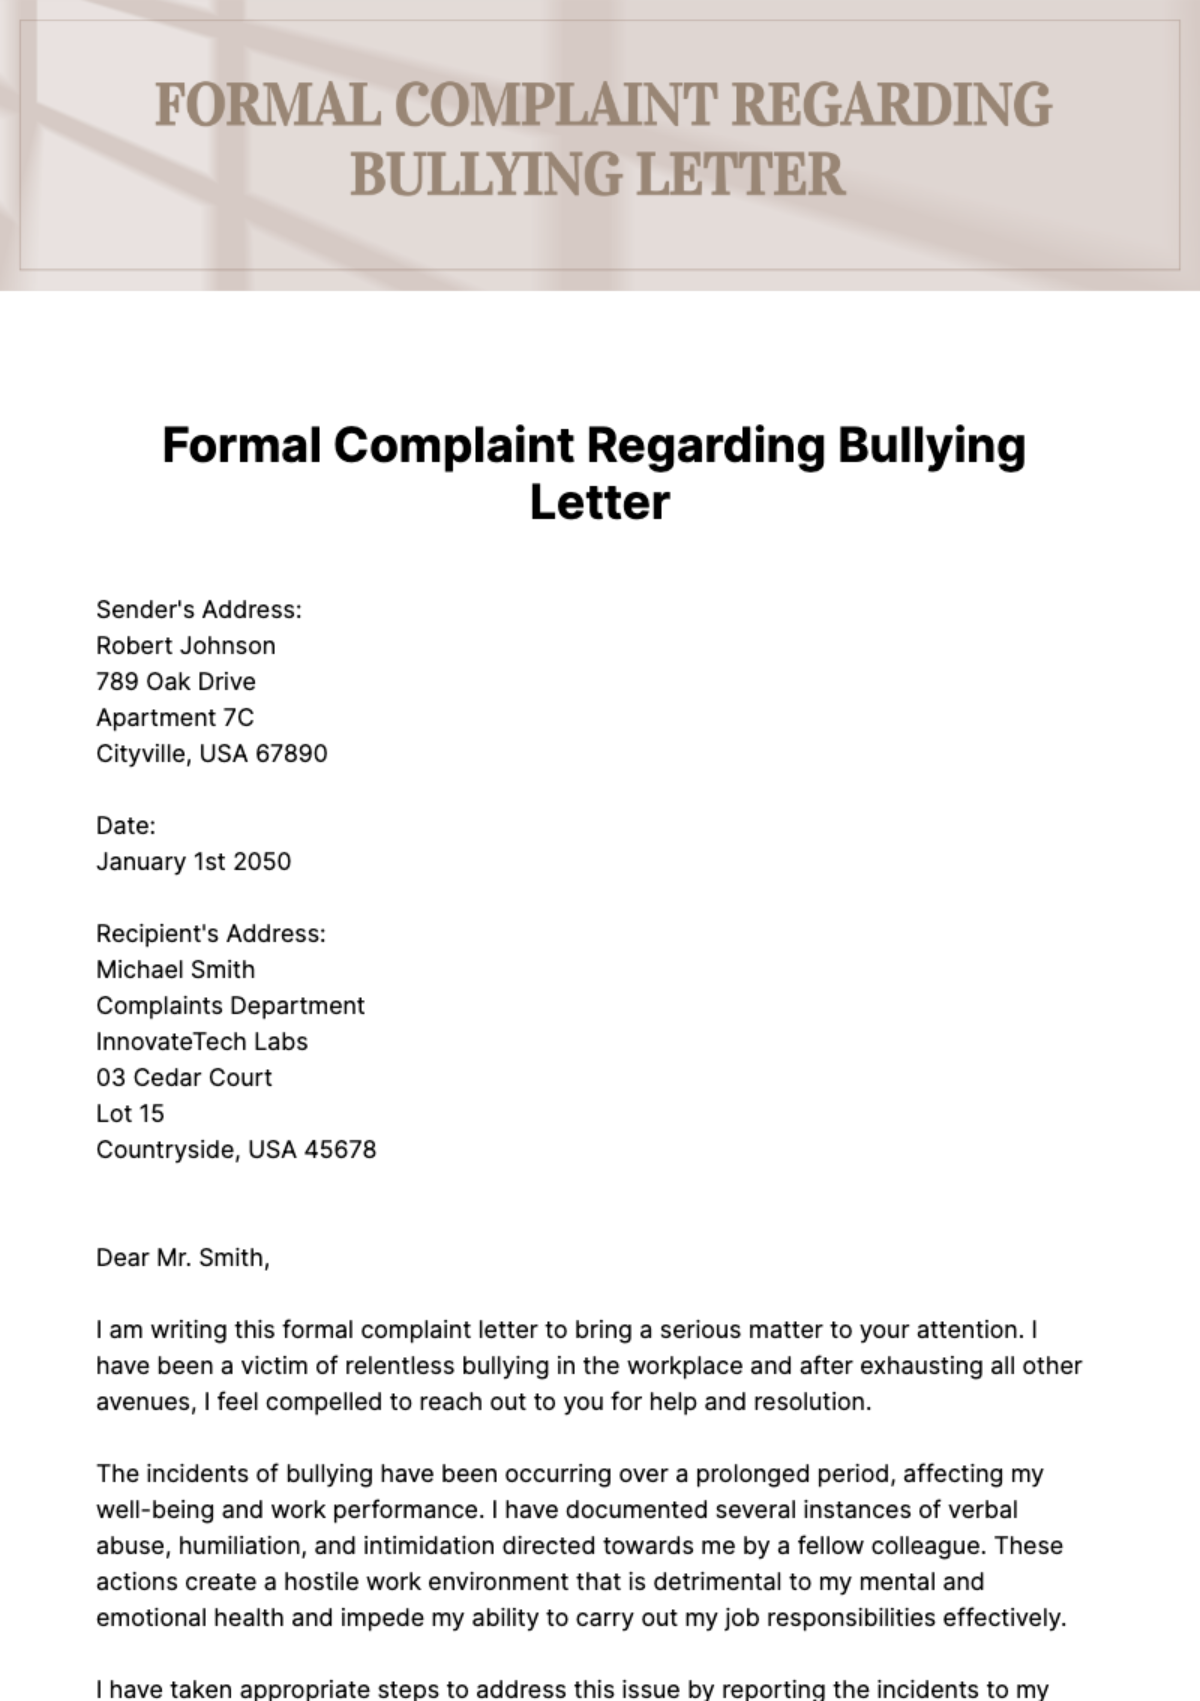 Formal Complaint Regarding Bullying Letter Template